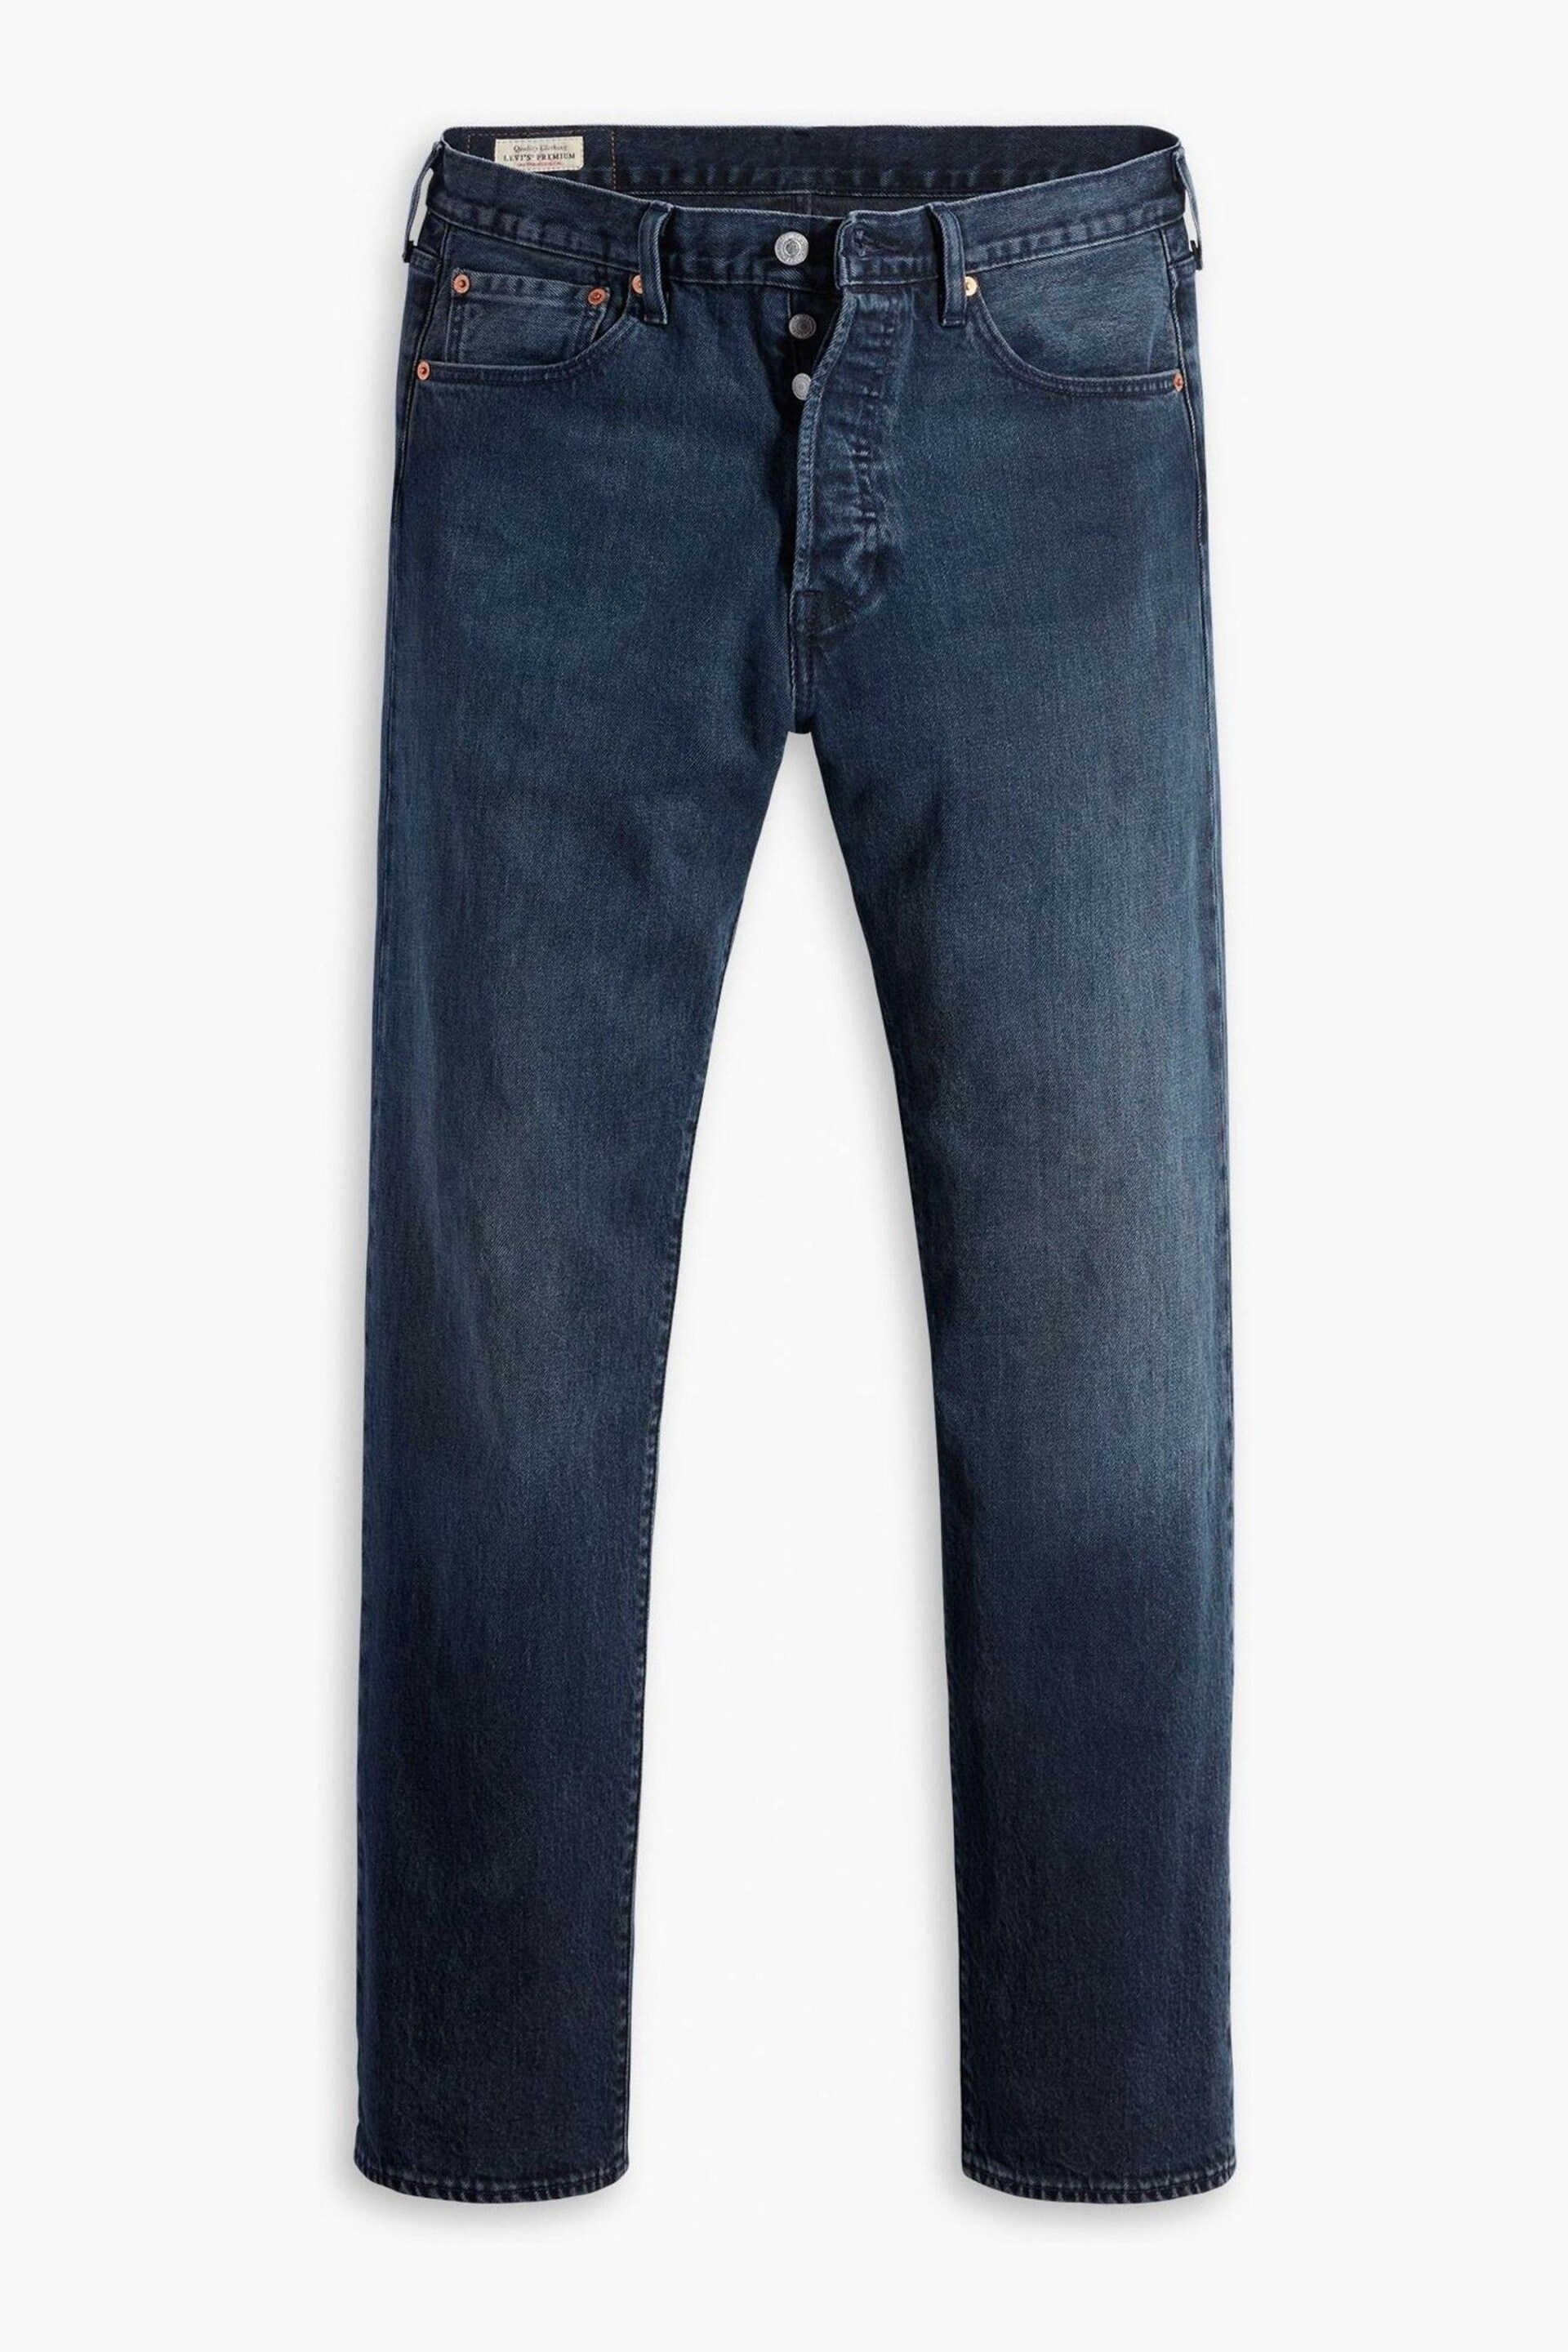 Levi's® Blue Original Fit Blue Jeans - Image 1 of 7